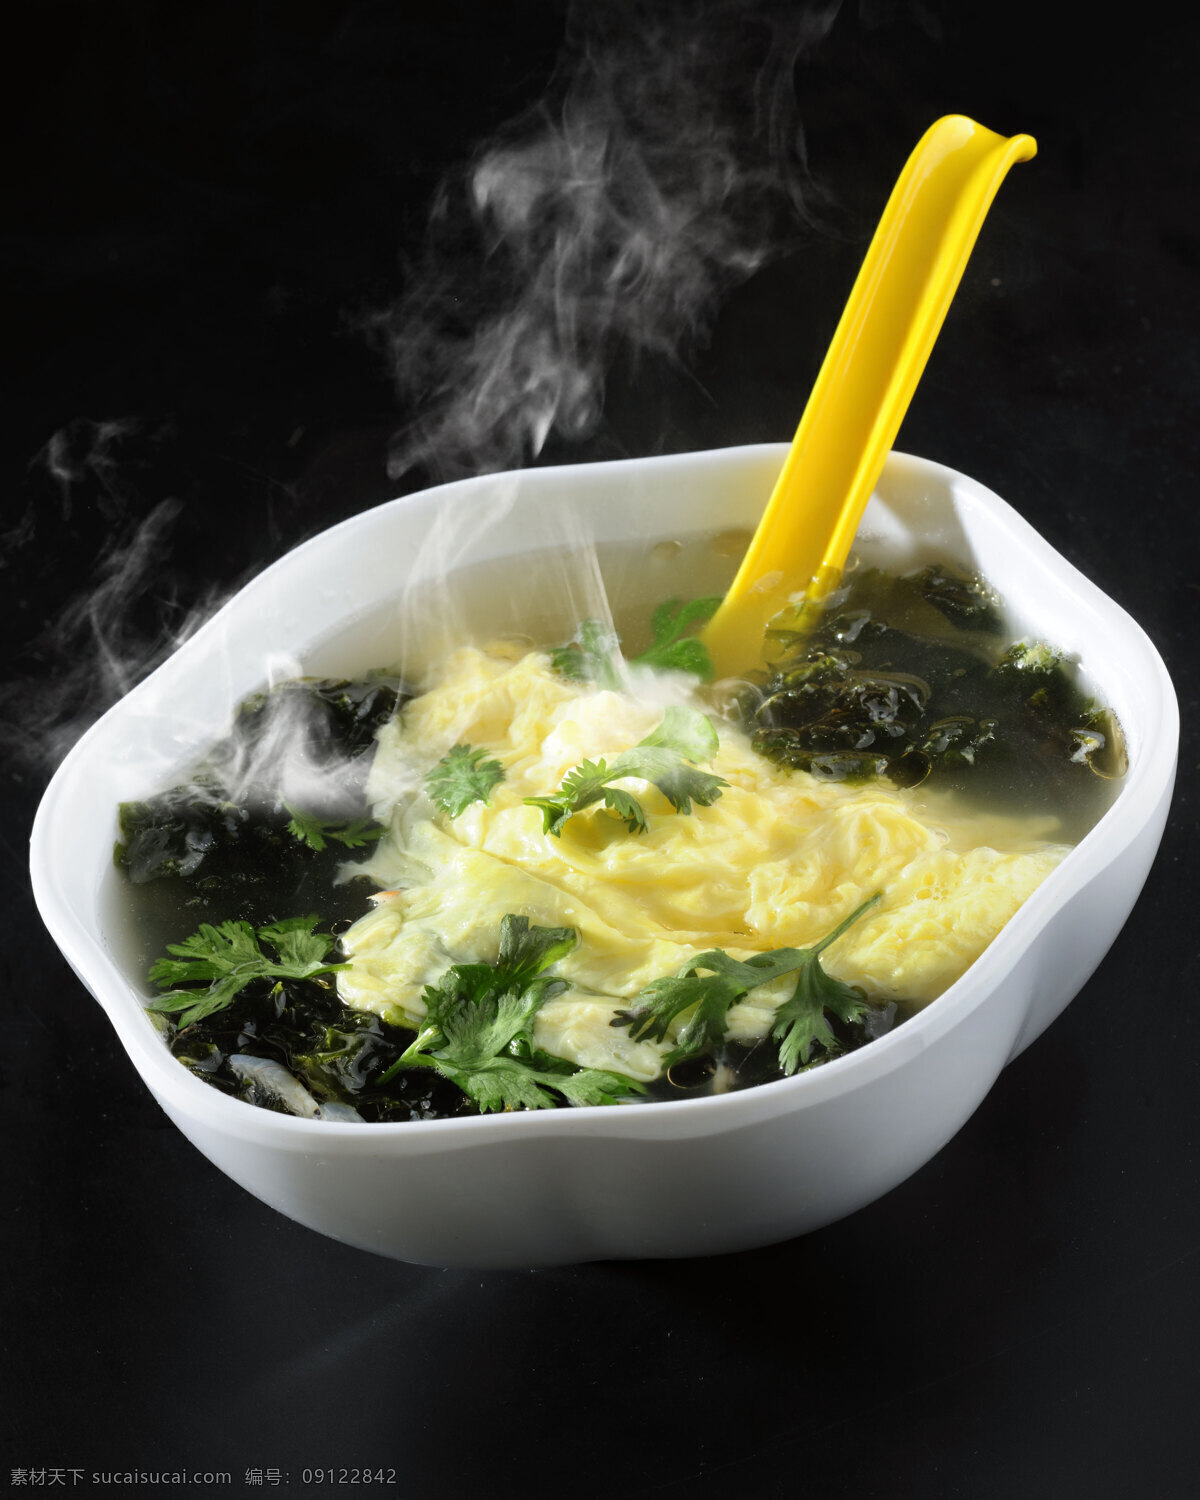 紫菜蛋花汤 小吃 西安名小吃 美食 食物 特色美食 传统美食 陕西美食 餐饮美食